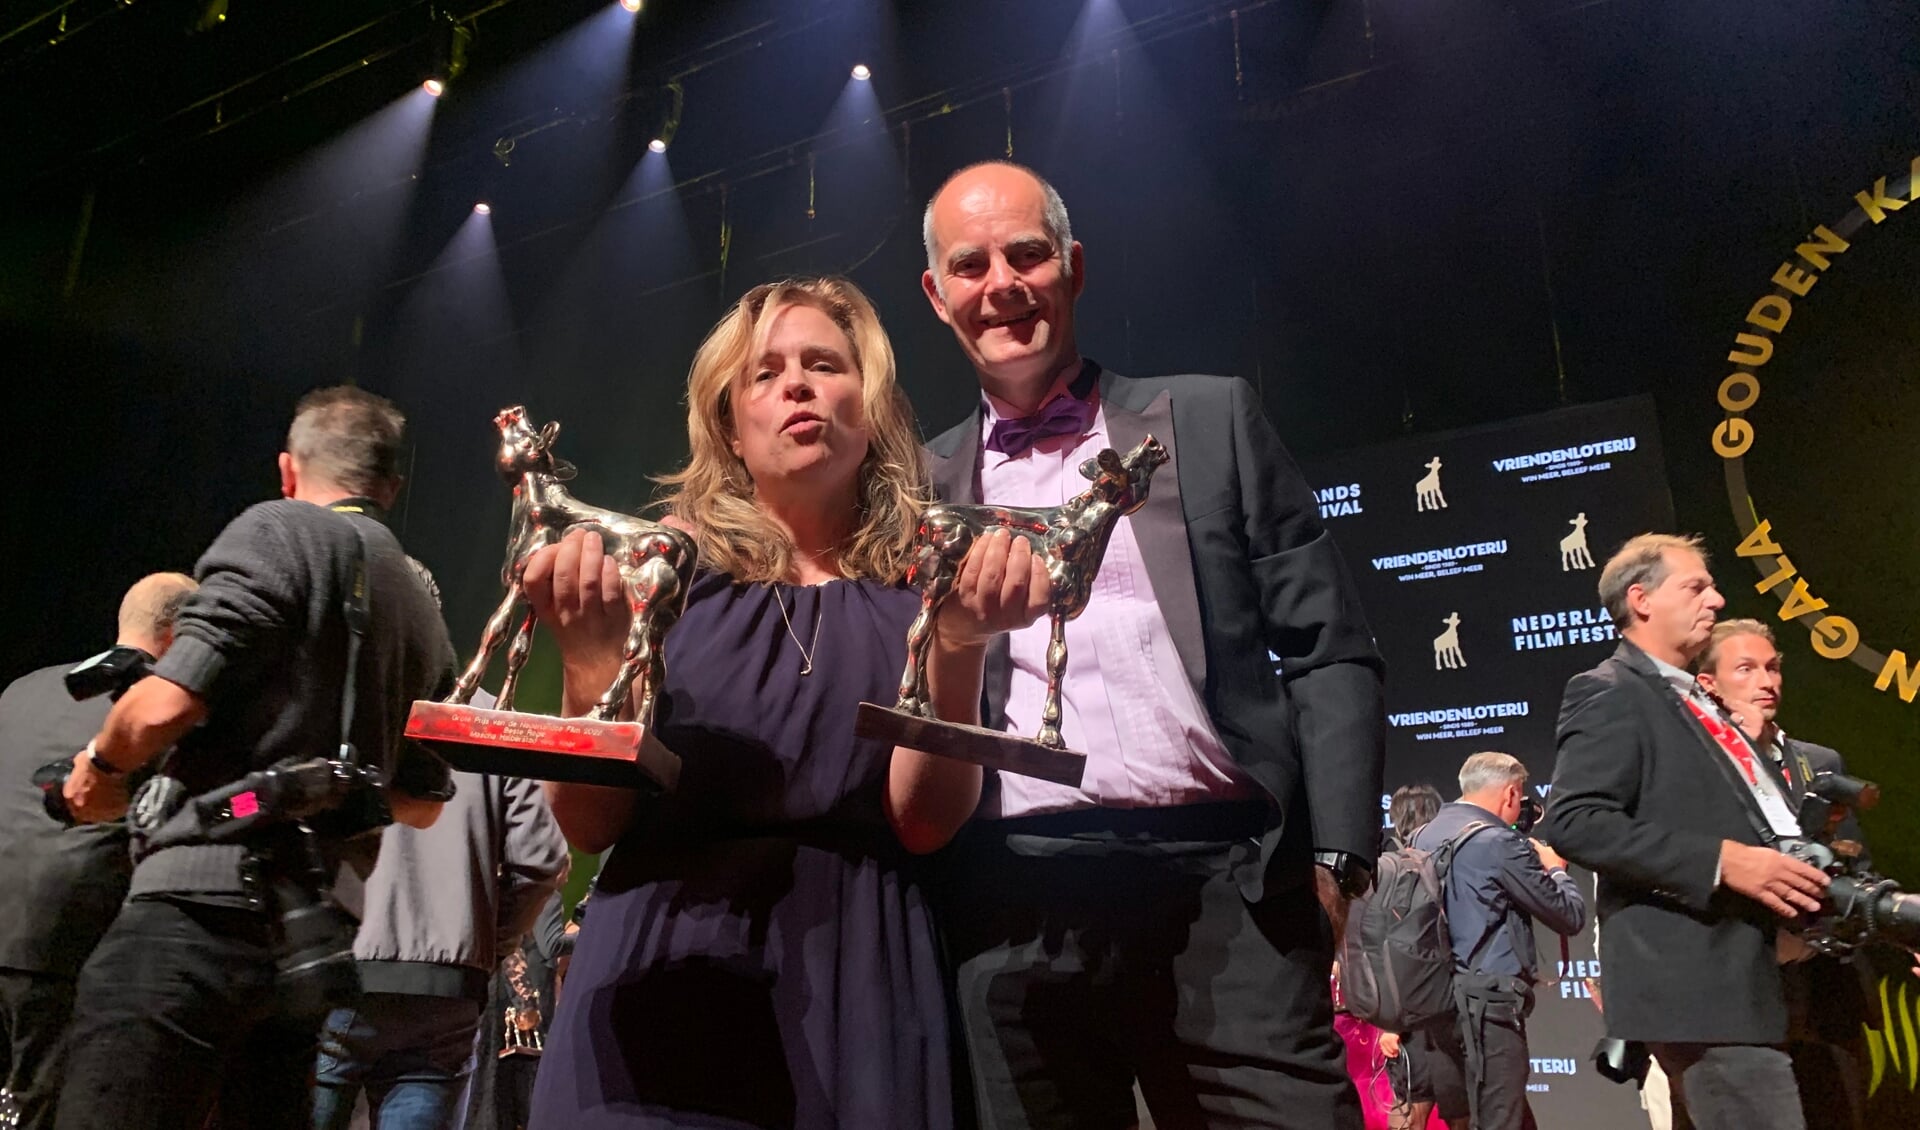 Mascha Halberstad en Peter Mansfelt wonnen maar liefst drie Gouden Kalveren voor hun 'Knor'. 